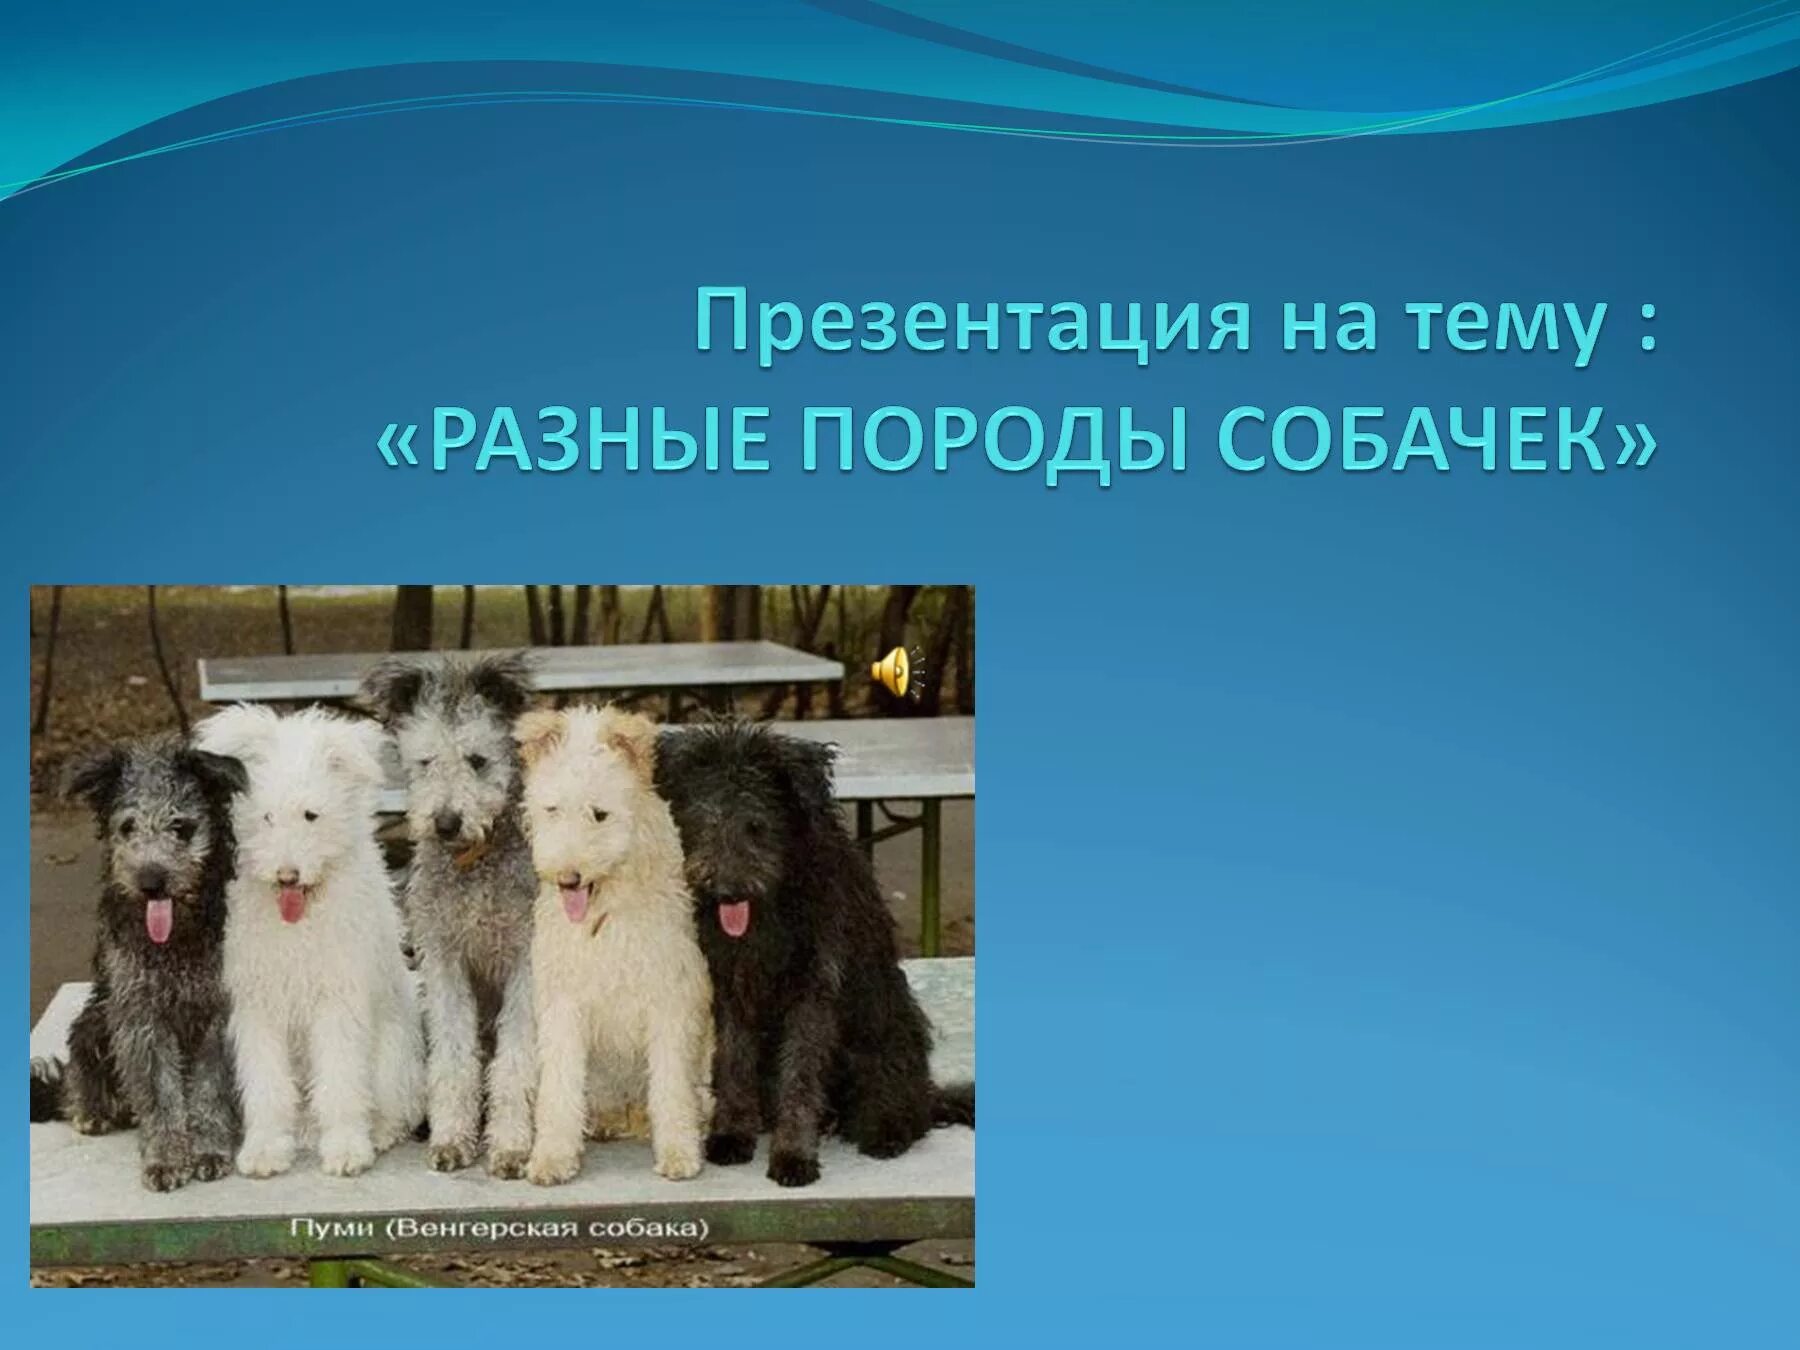 Породы собак презентация. Презентация на тему собаки. Собака для презентации. Презентация разные породы собак. Песня мы разной породы